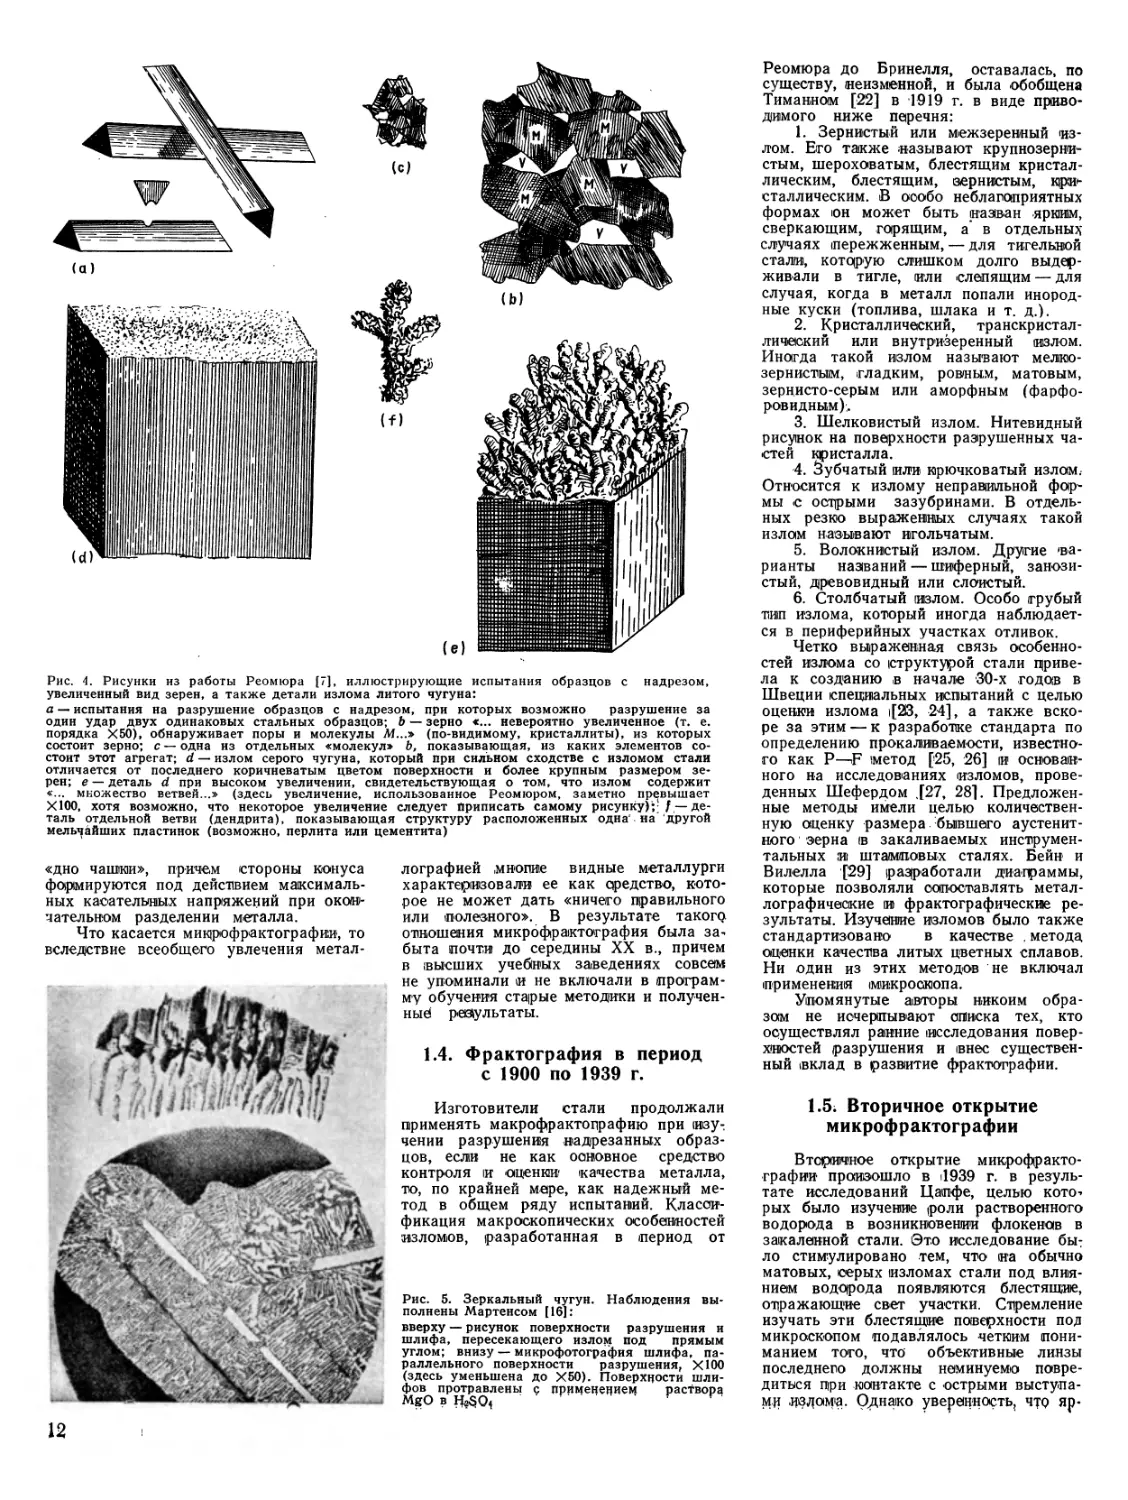 1.4. Фрактография в период с 1900 по 1939 г
1.5 Вторичное открытие микрофрактографии